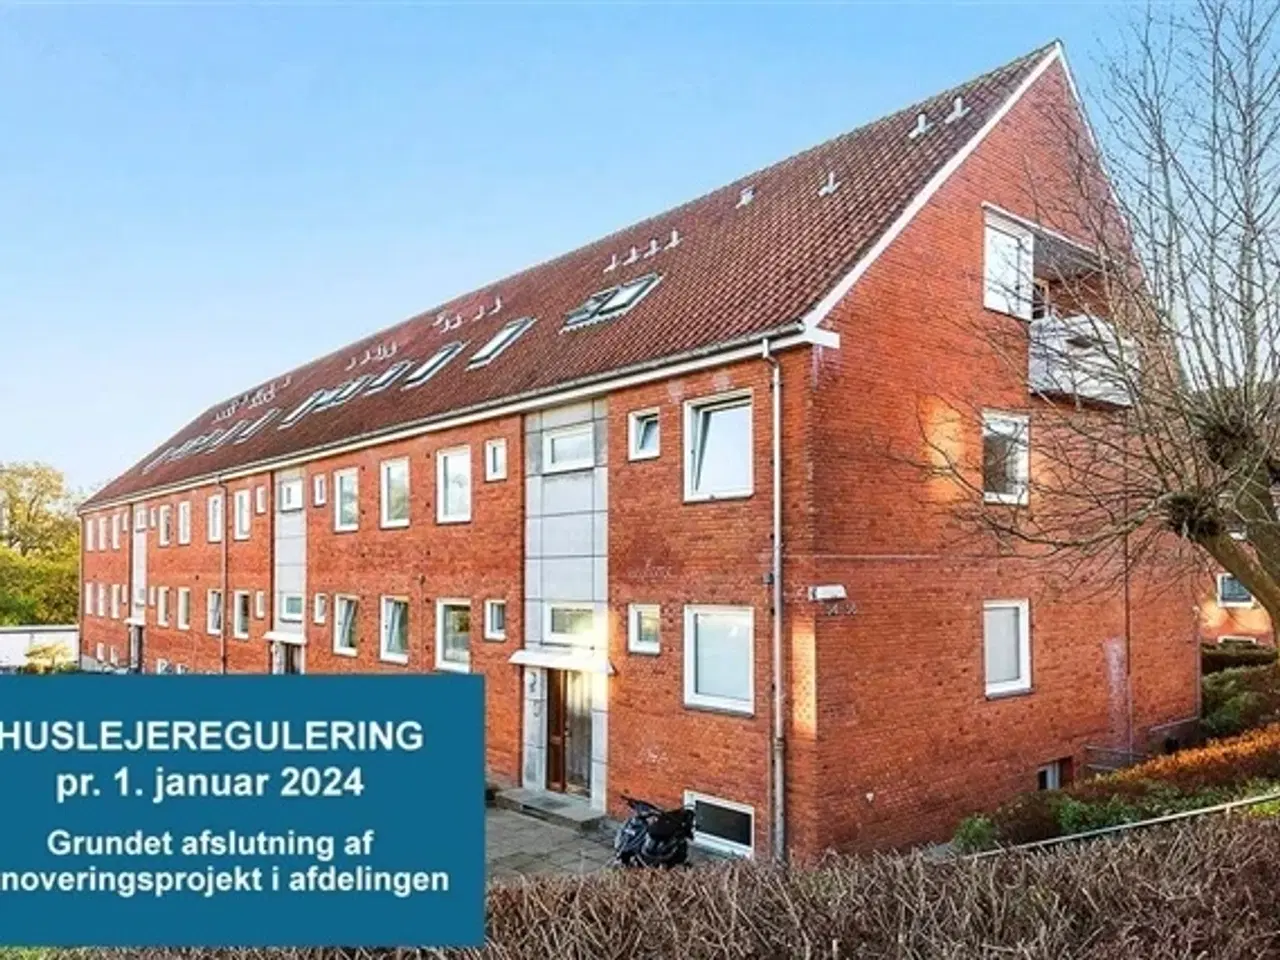 Billede 1 - Hermann Stillings Vej, 80 m2, 2 værelser, 6.407 kr., Randers NØ, Aarhus